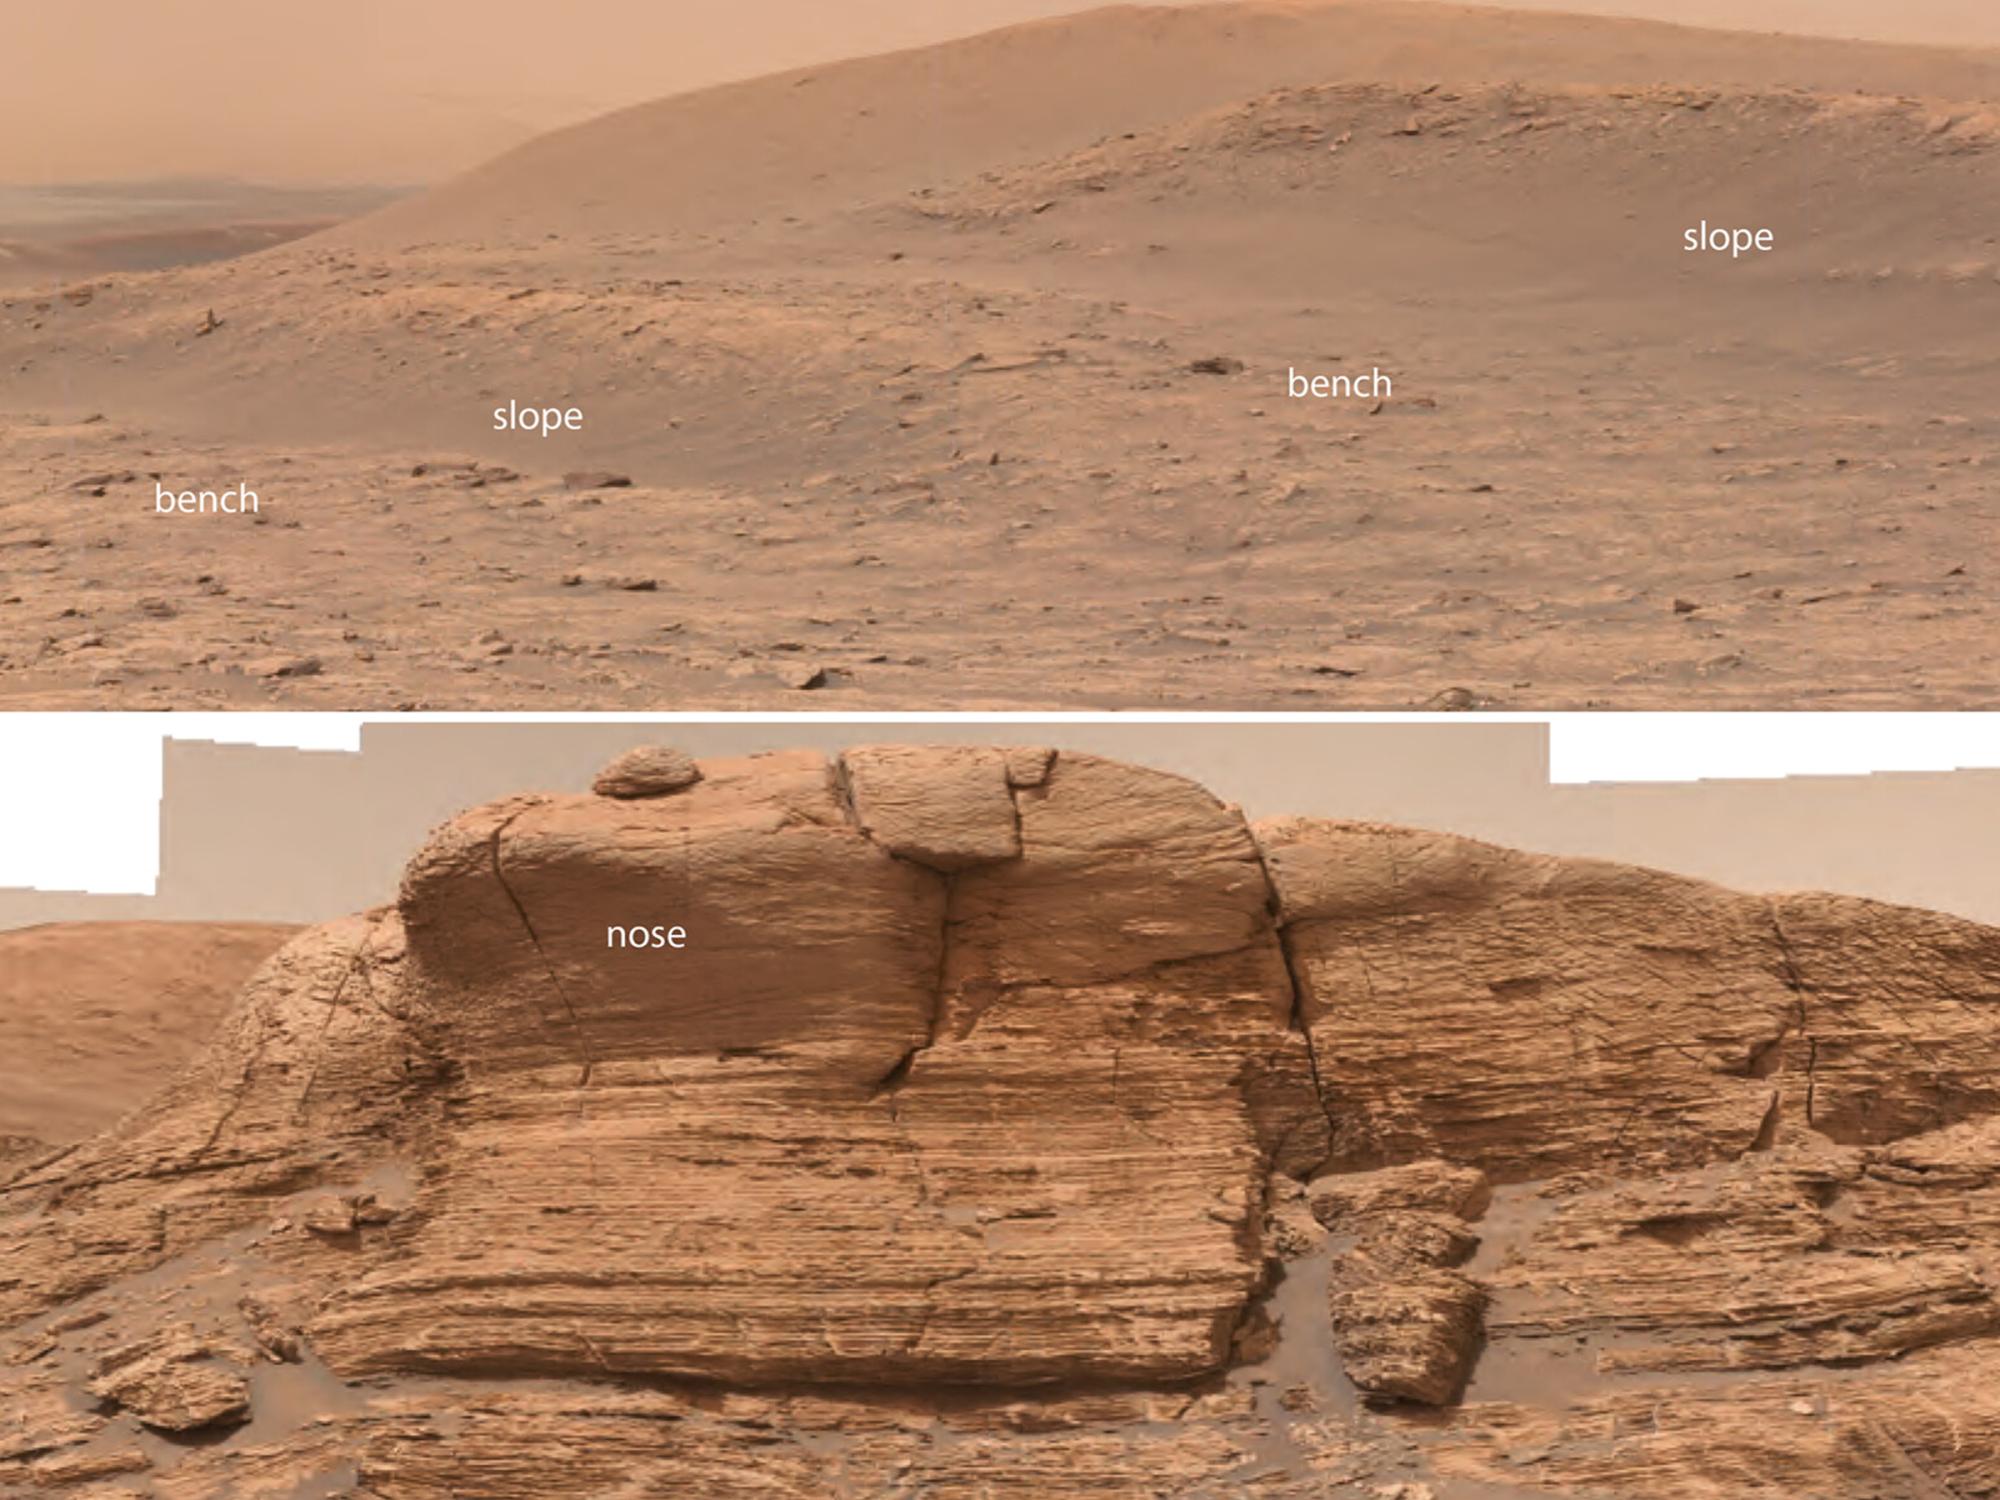 rocce a forma di panchina sulla superficie rossa e sabbiosa di Marte